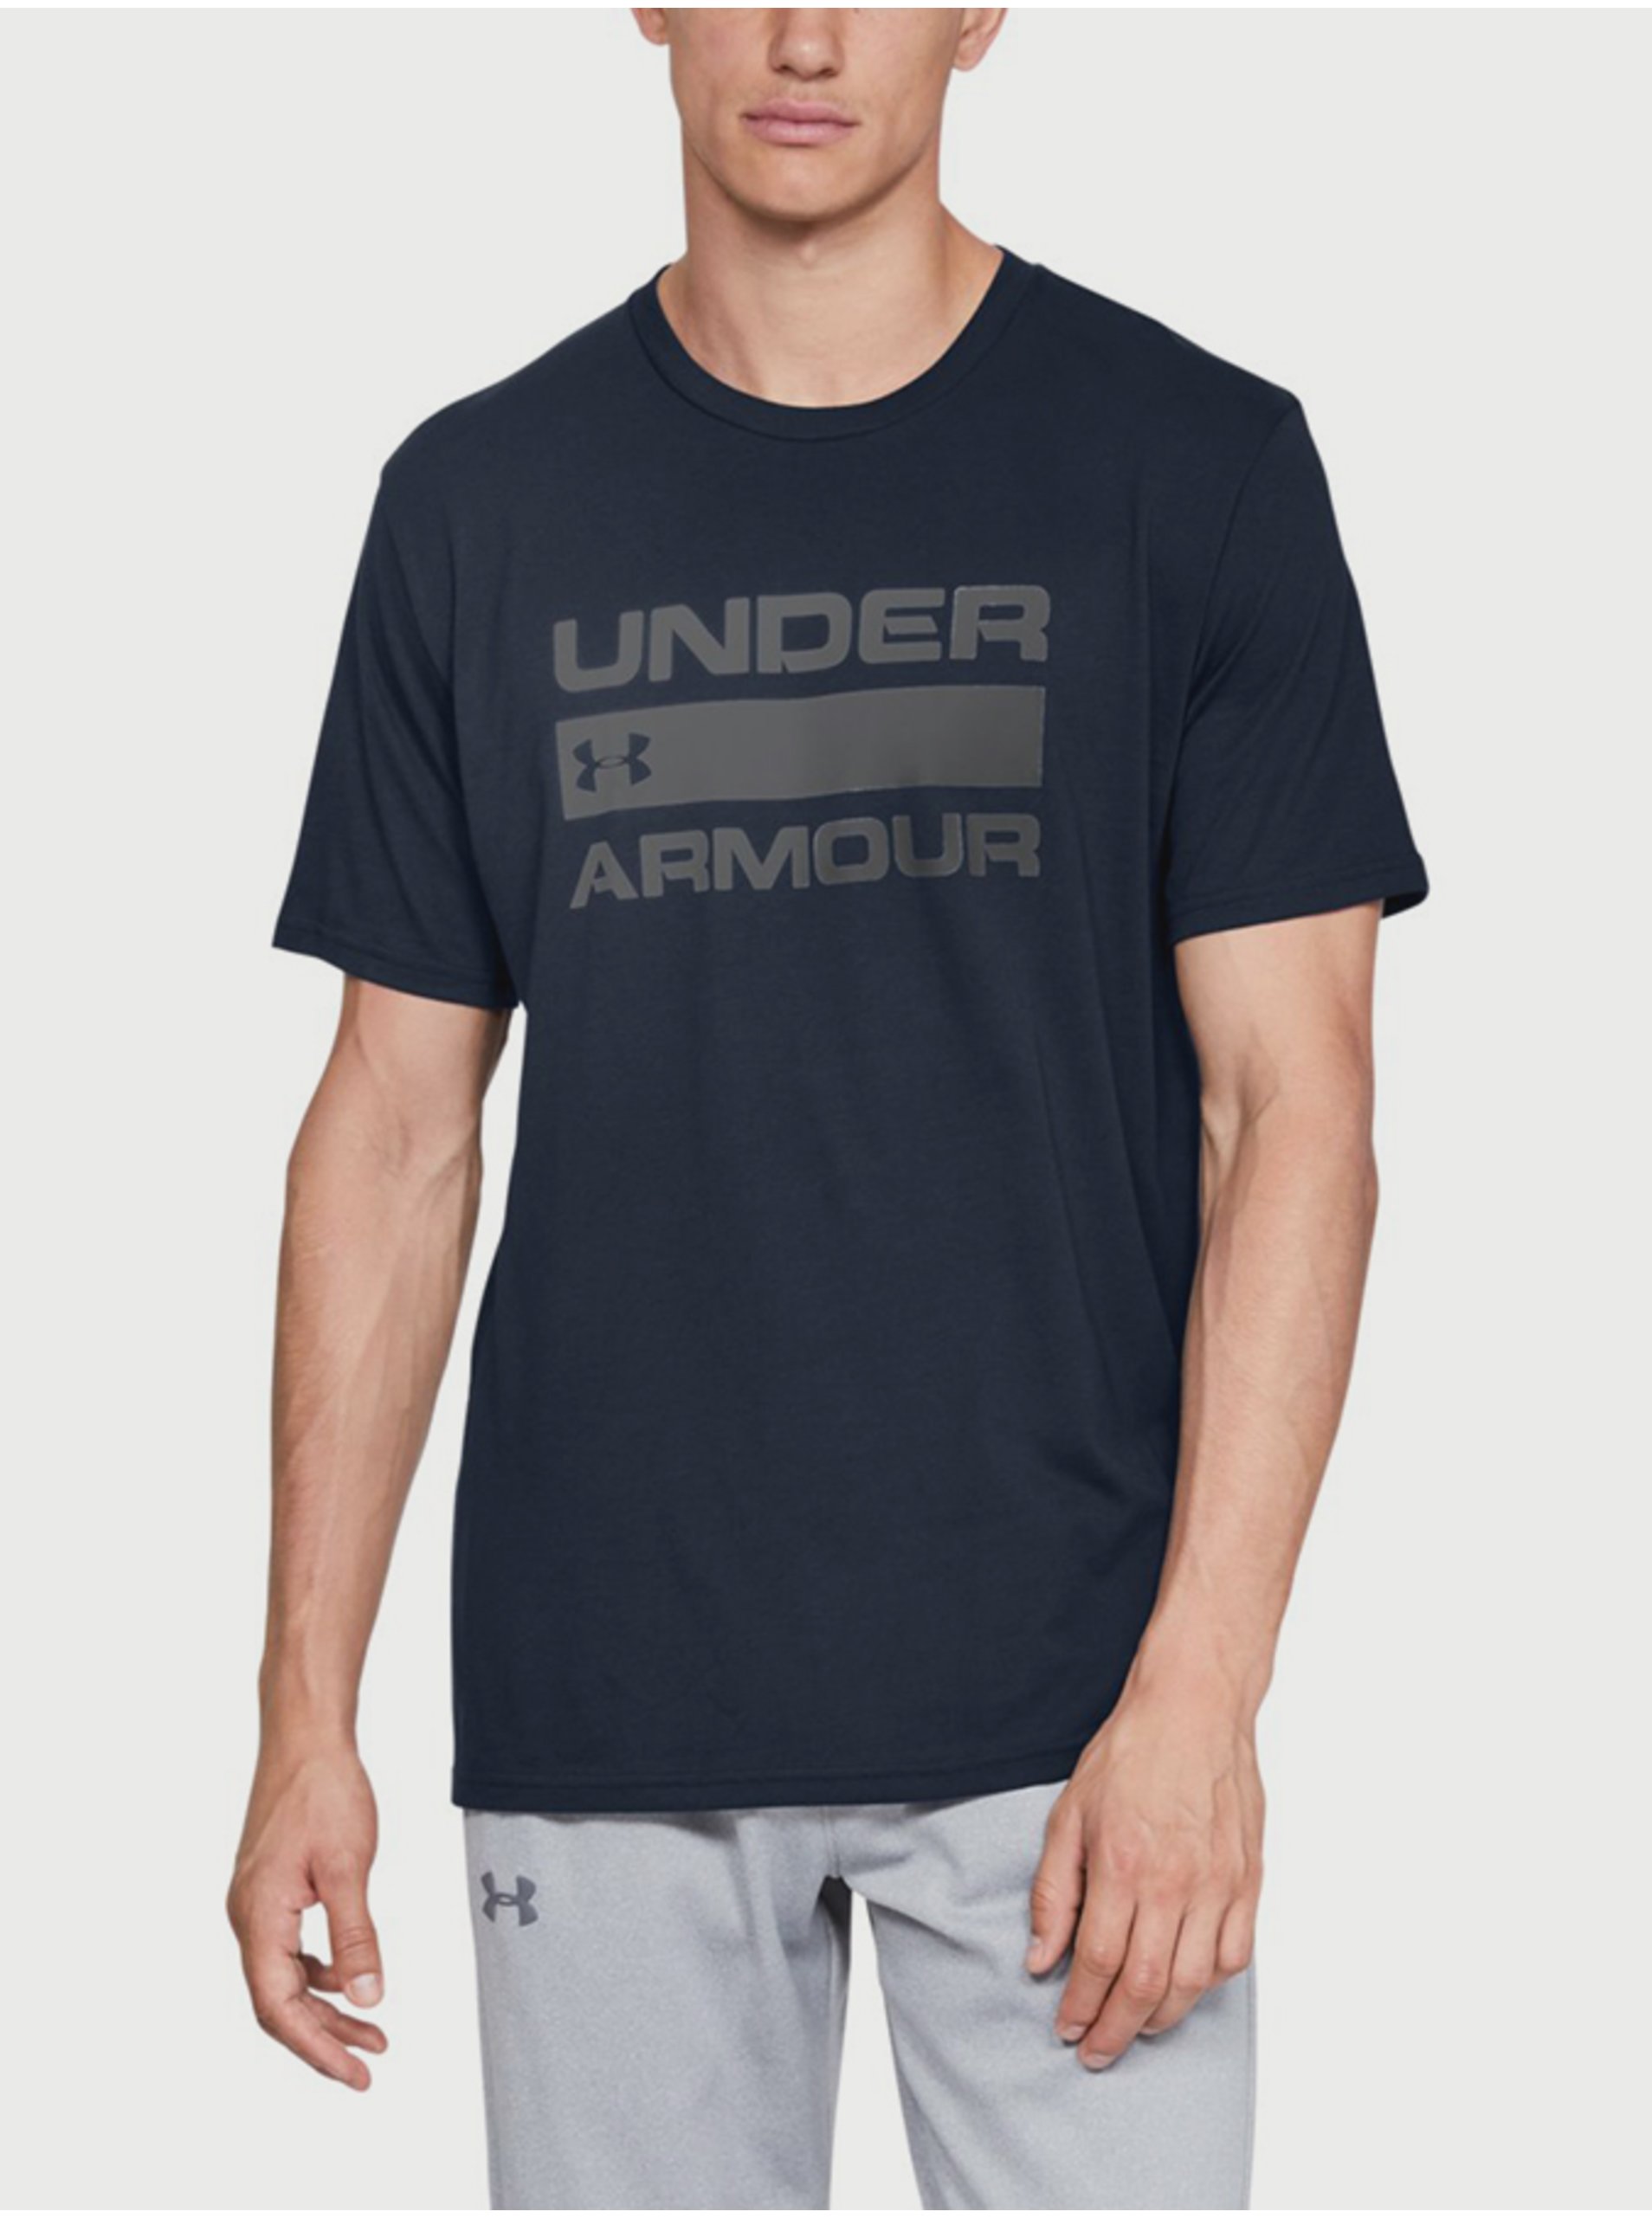 Lacno Tmavomodré pánske tričko Under Armour Team Issue